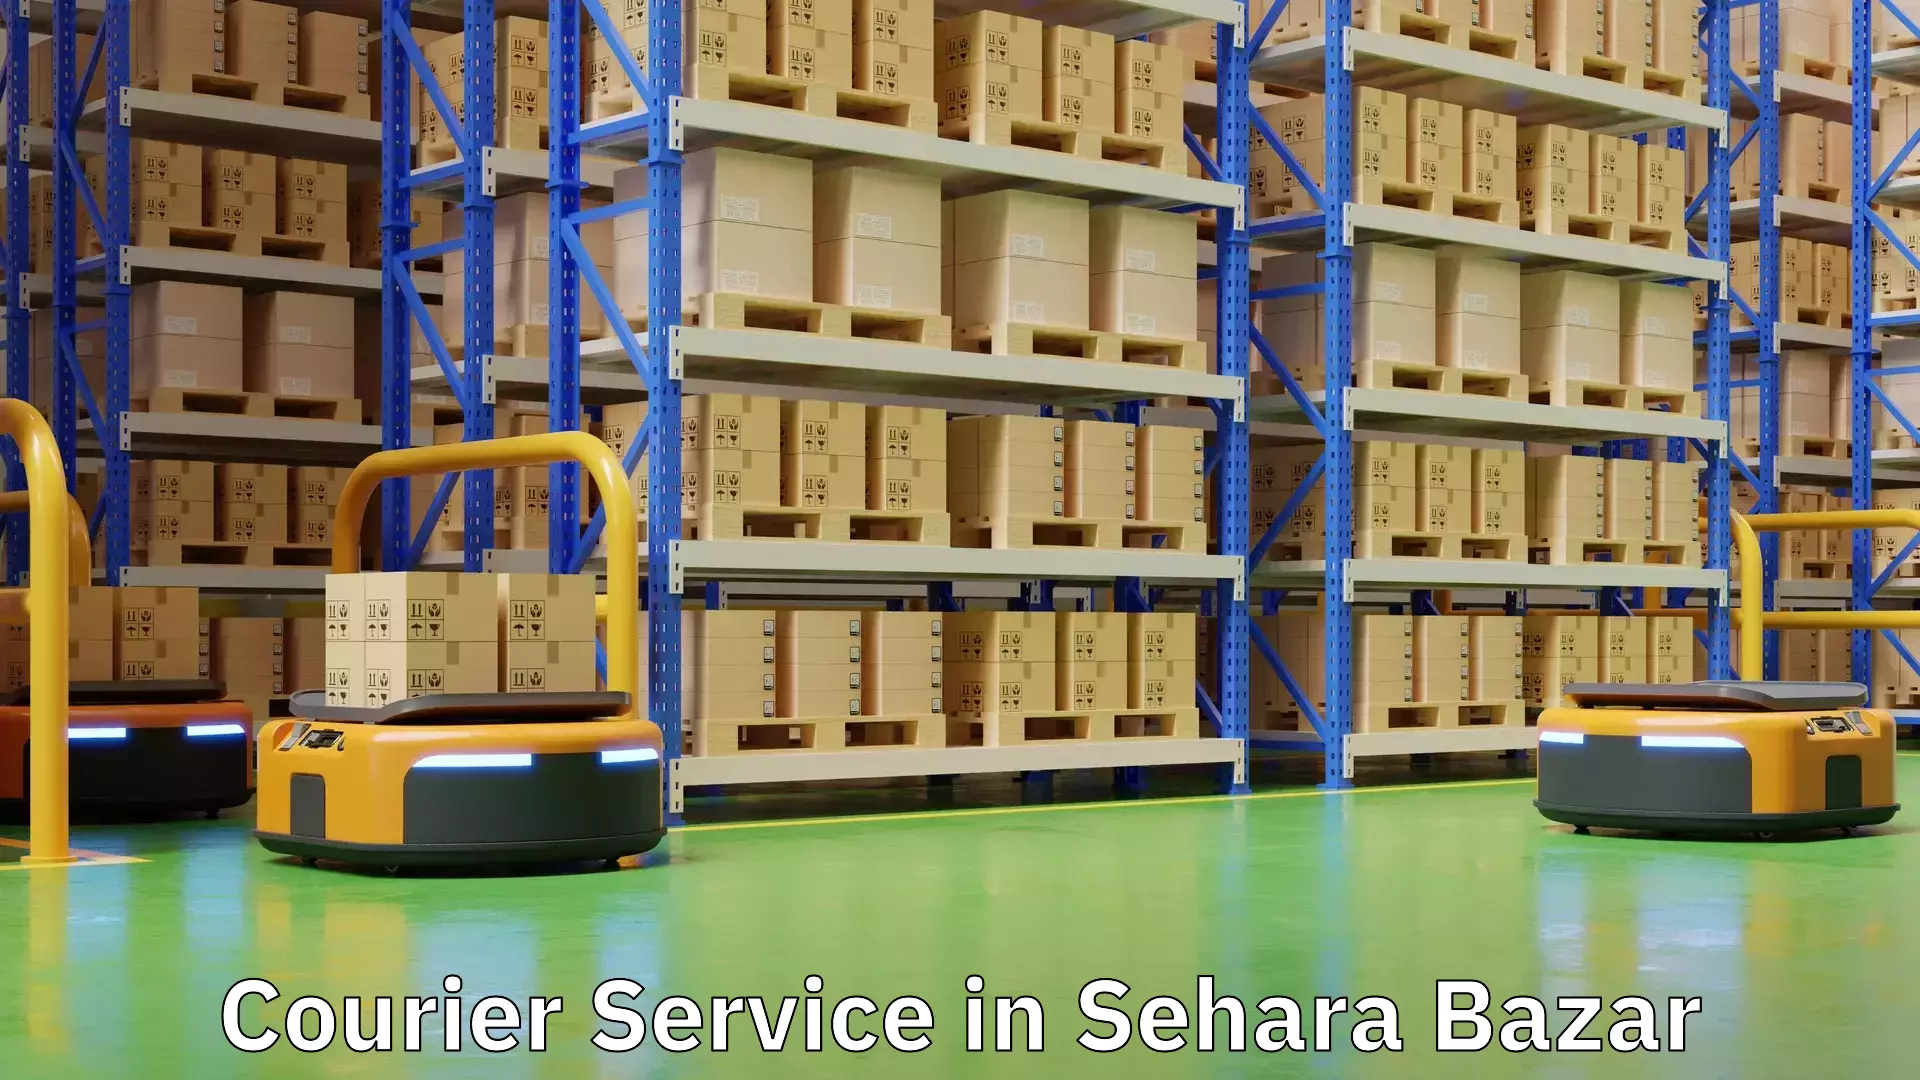 Urgent courier needs in Sehara Bazar